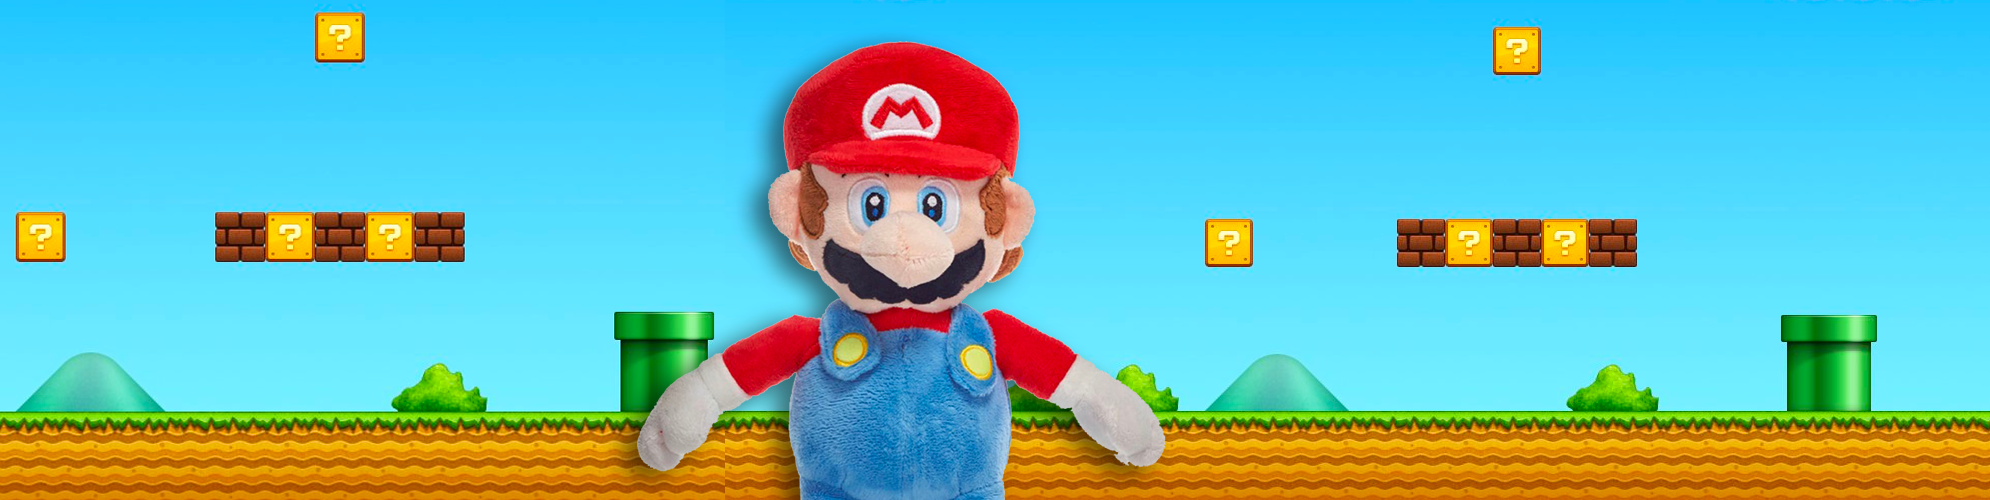 Las mejores ofertas en Super Mario Bros. animales de peluche para niños